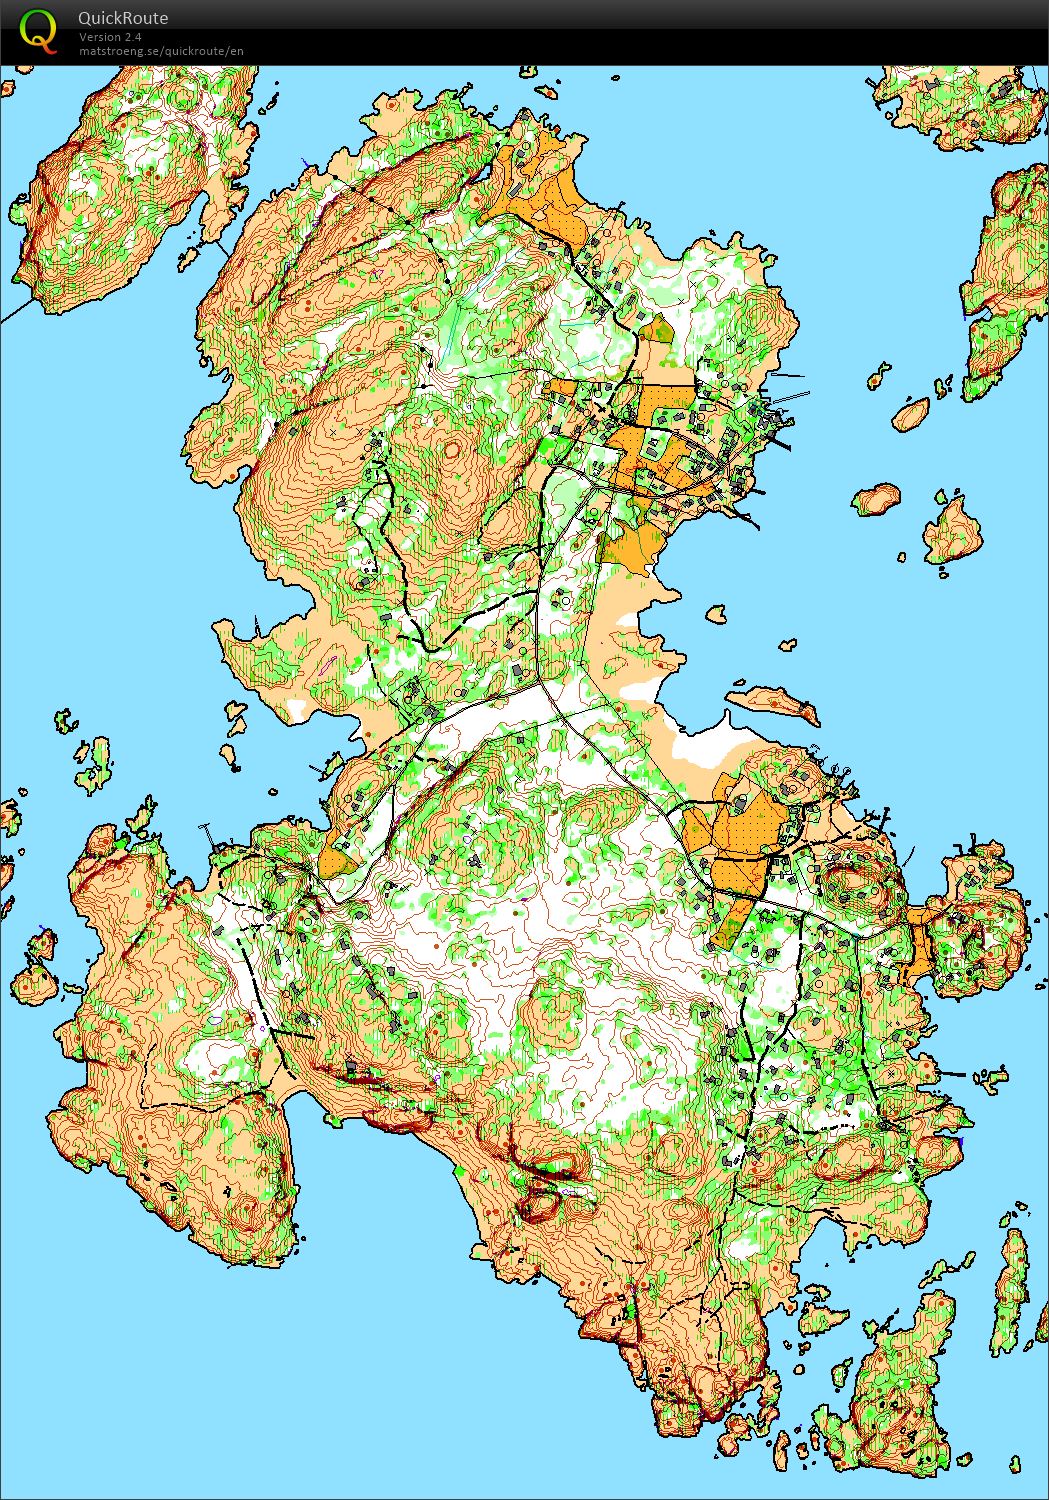 Herføl path survey (2016-06-05)